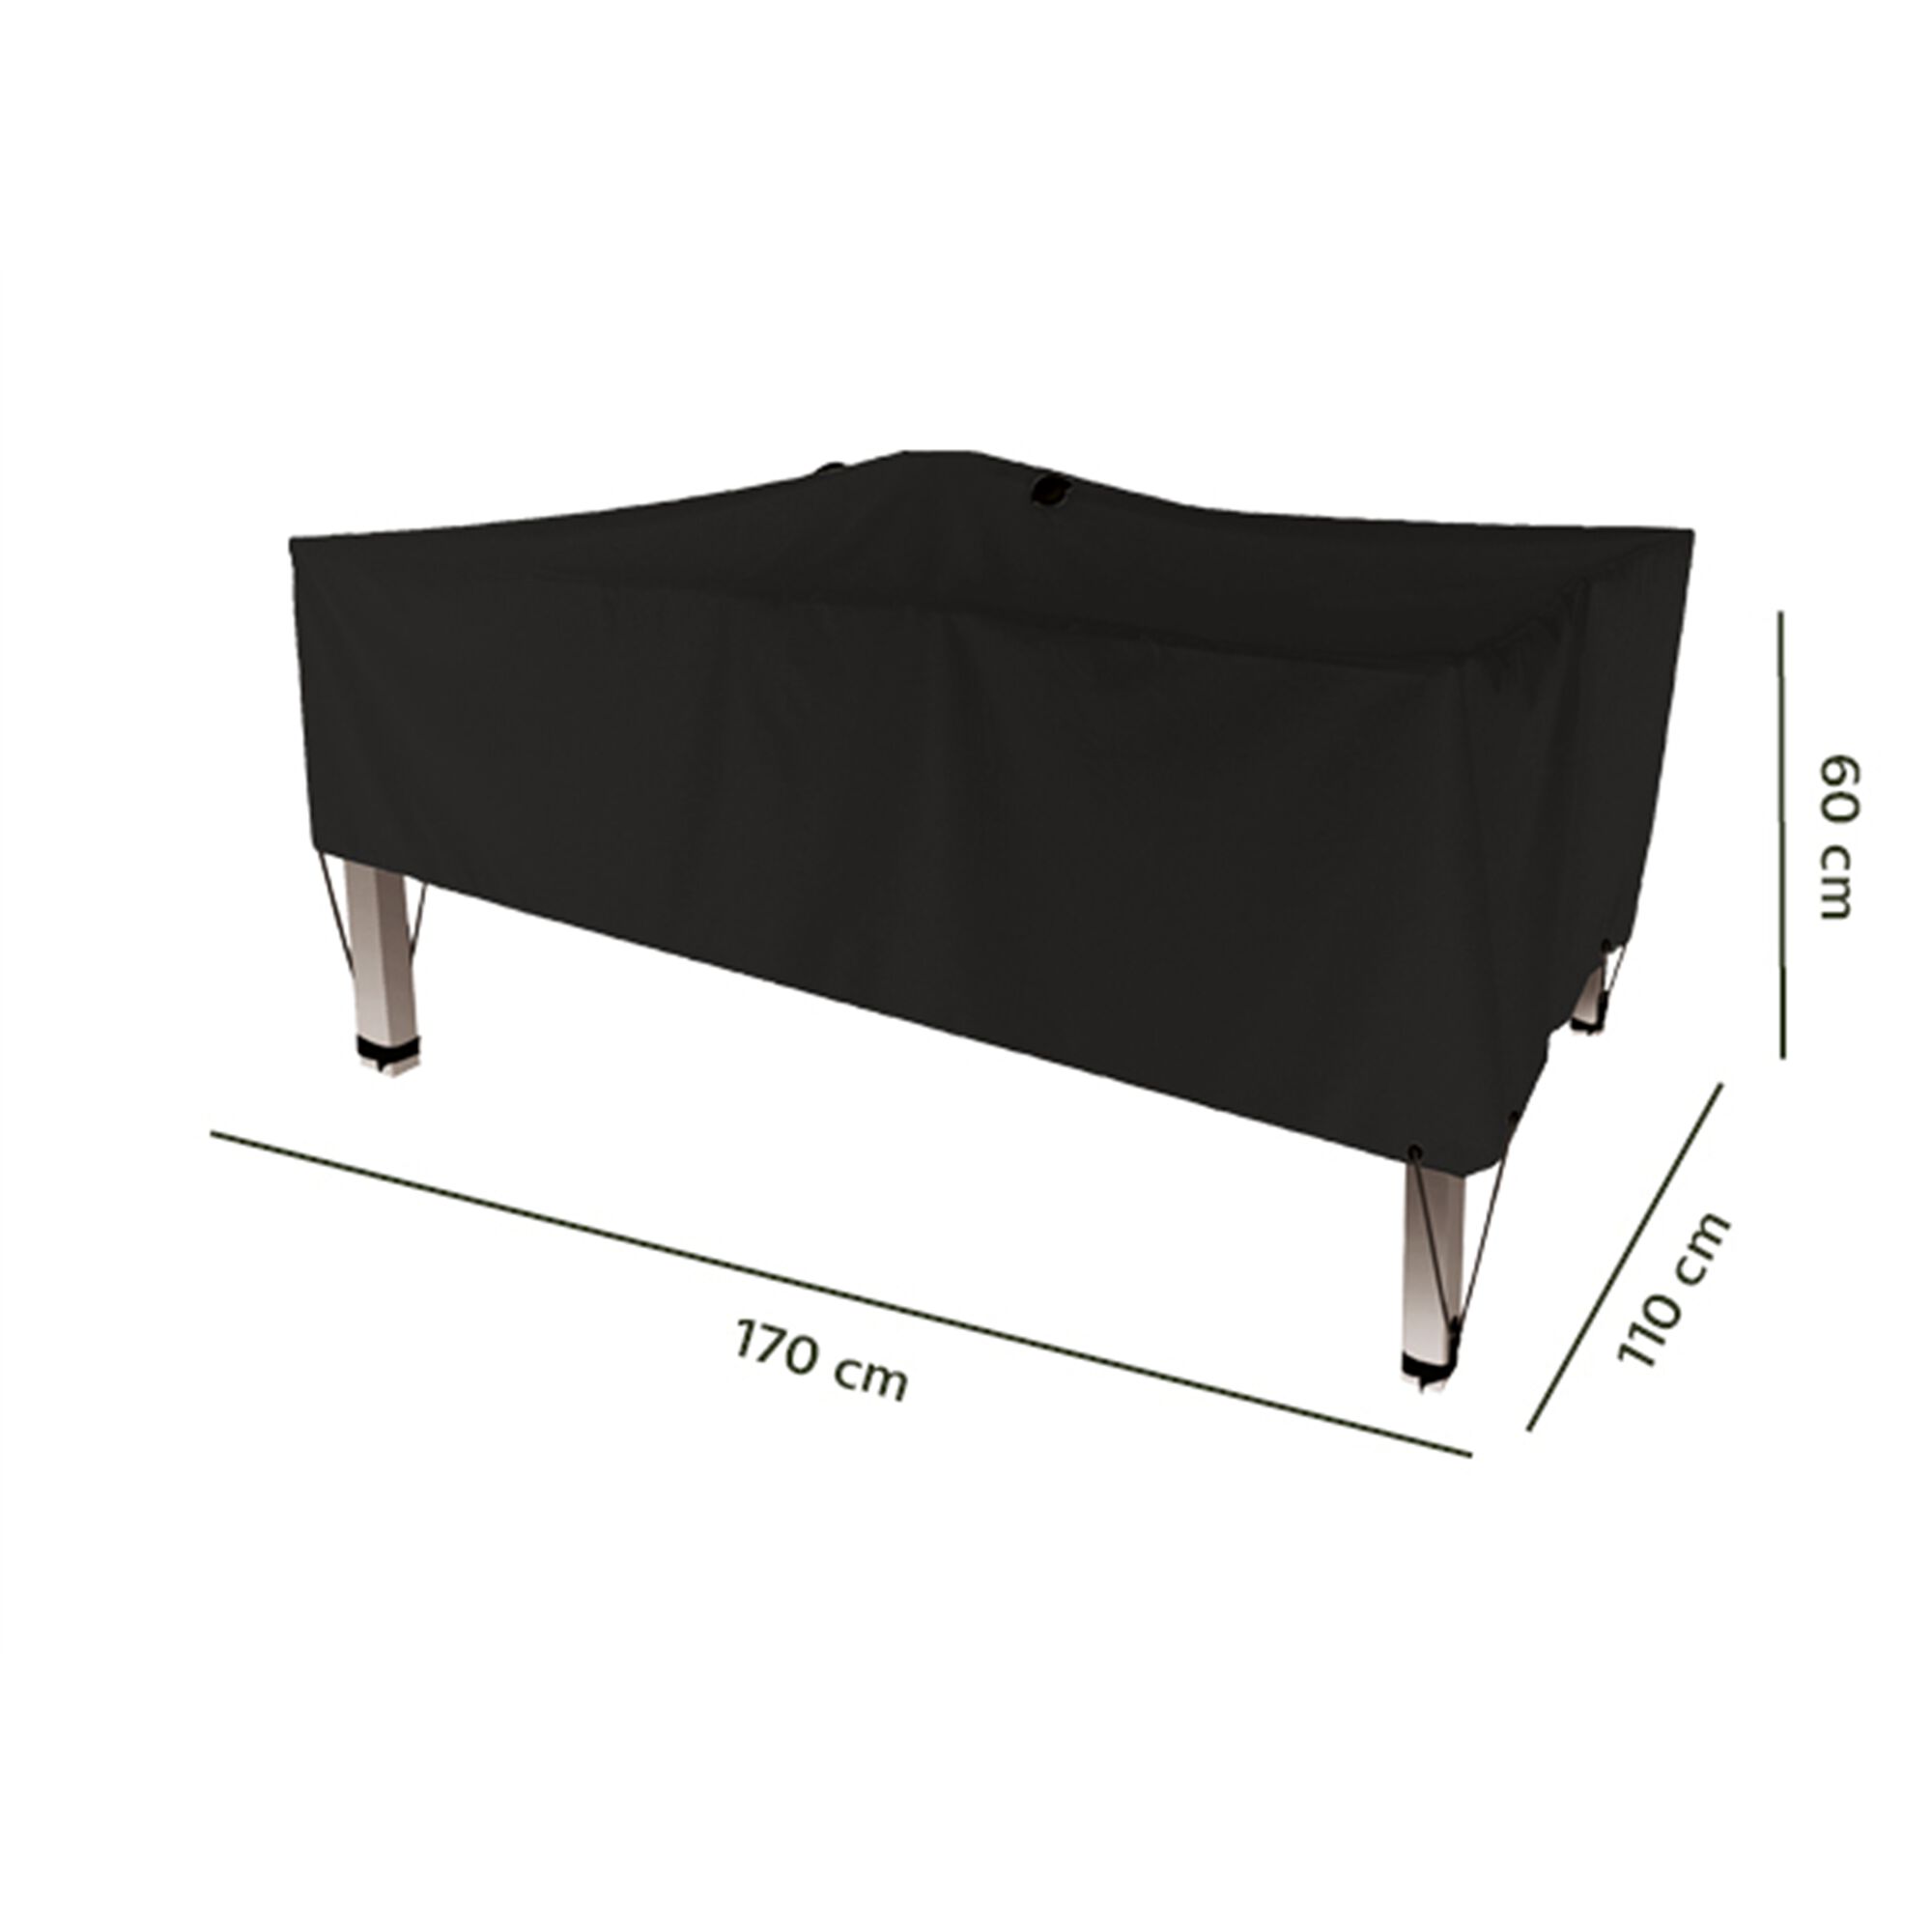 Housse de protection pour table - noir - (L170x110xH60cm)-RIANS